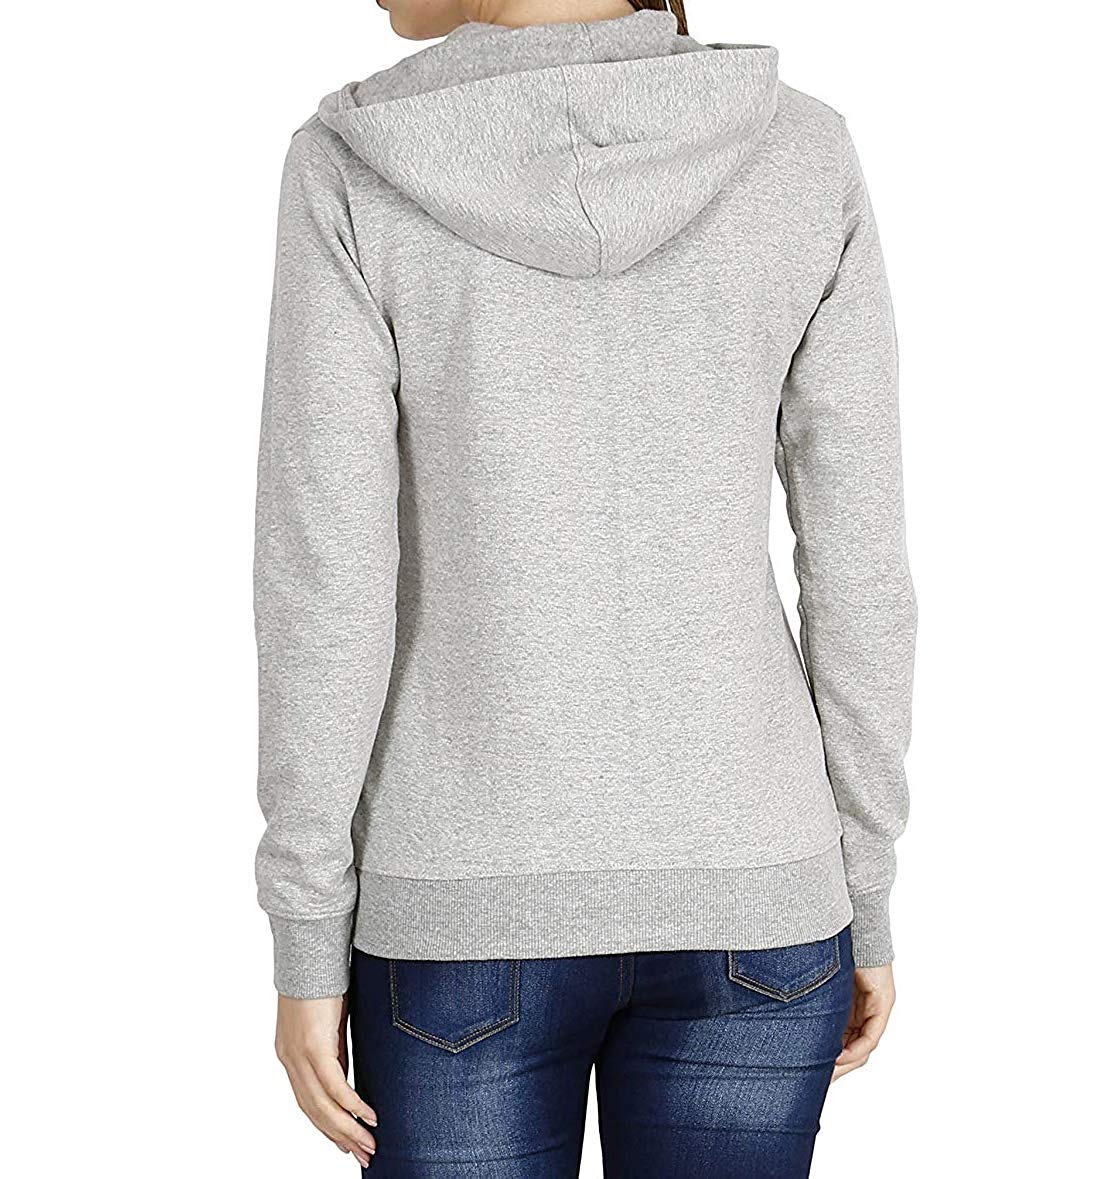 Prokick Women's Cotton Sweatshirt/Hoodie - Light Grey - Best Price online Prokicksports.com